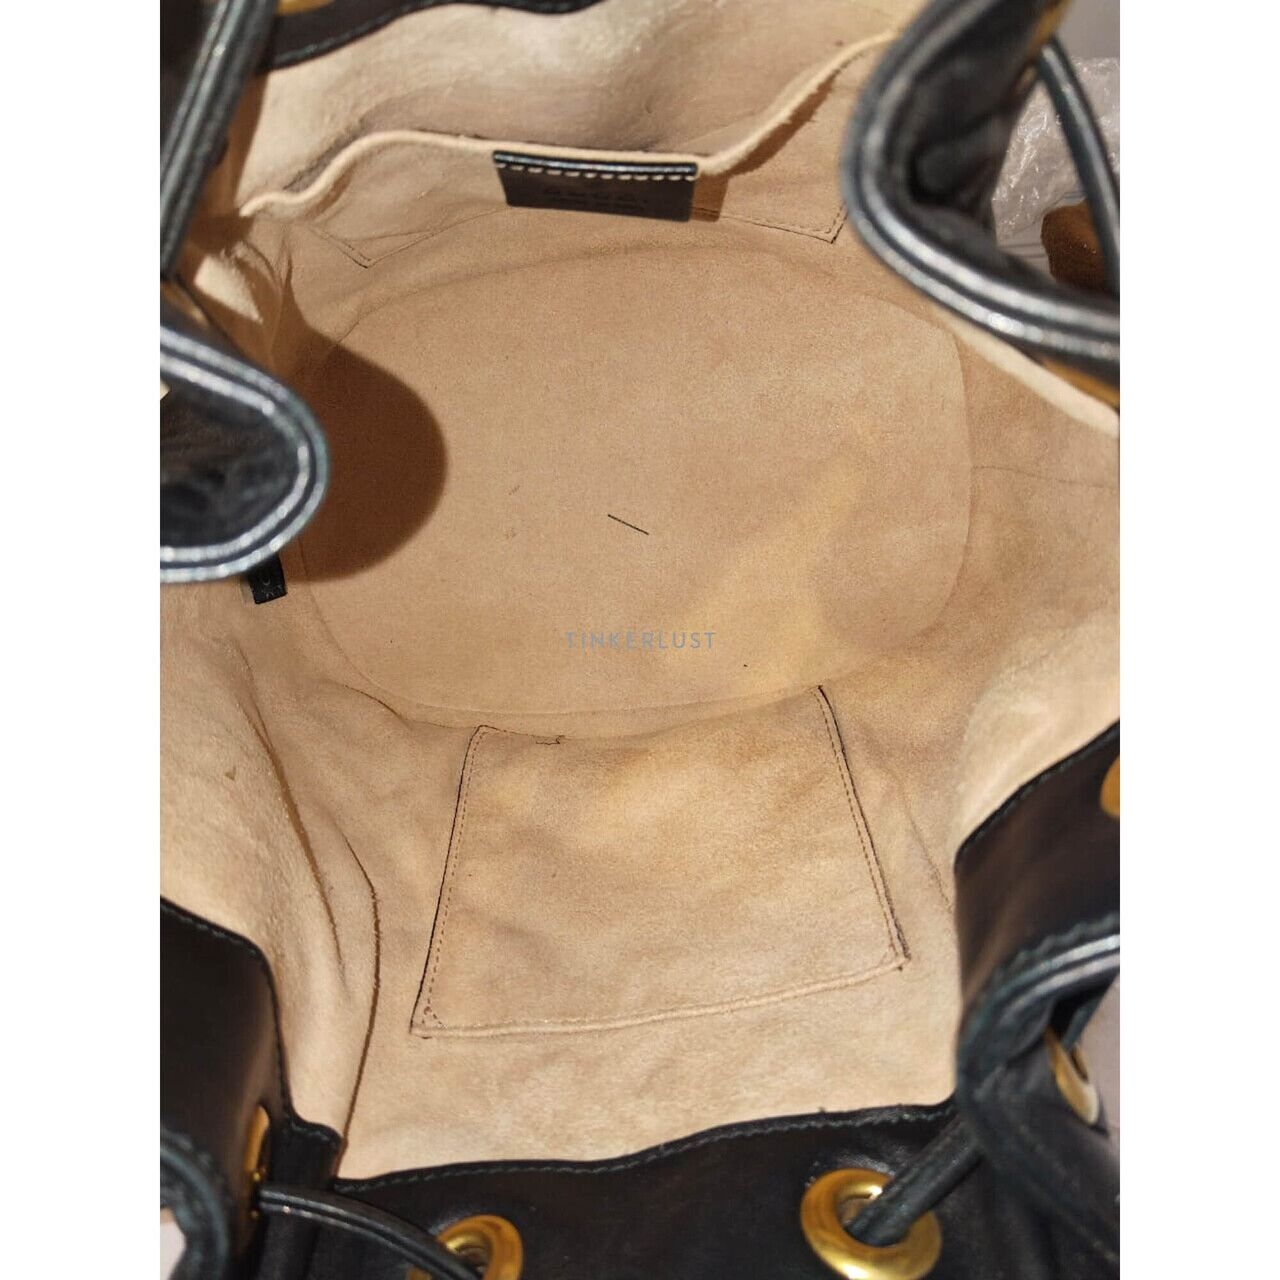 Gucci Bucket Marmont Black GHW Shoulder Bag